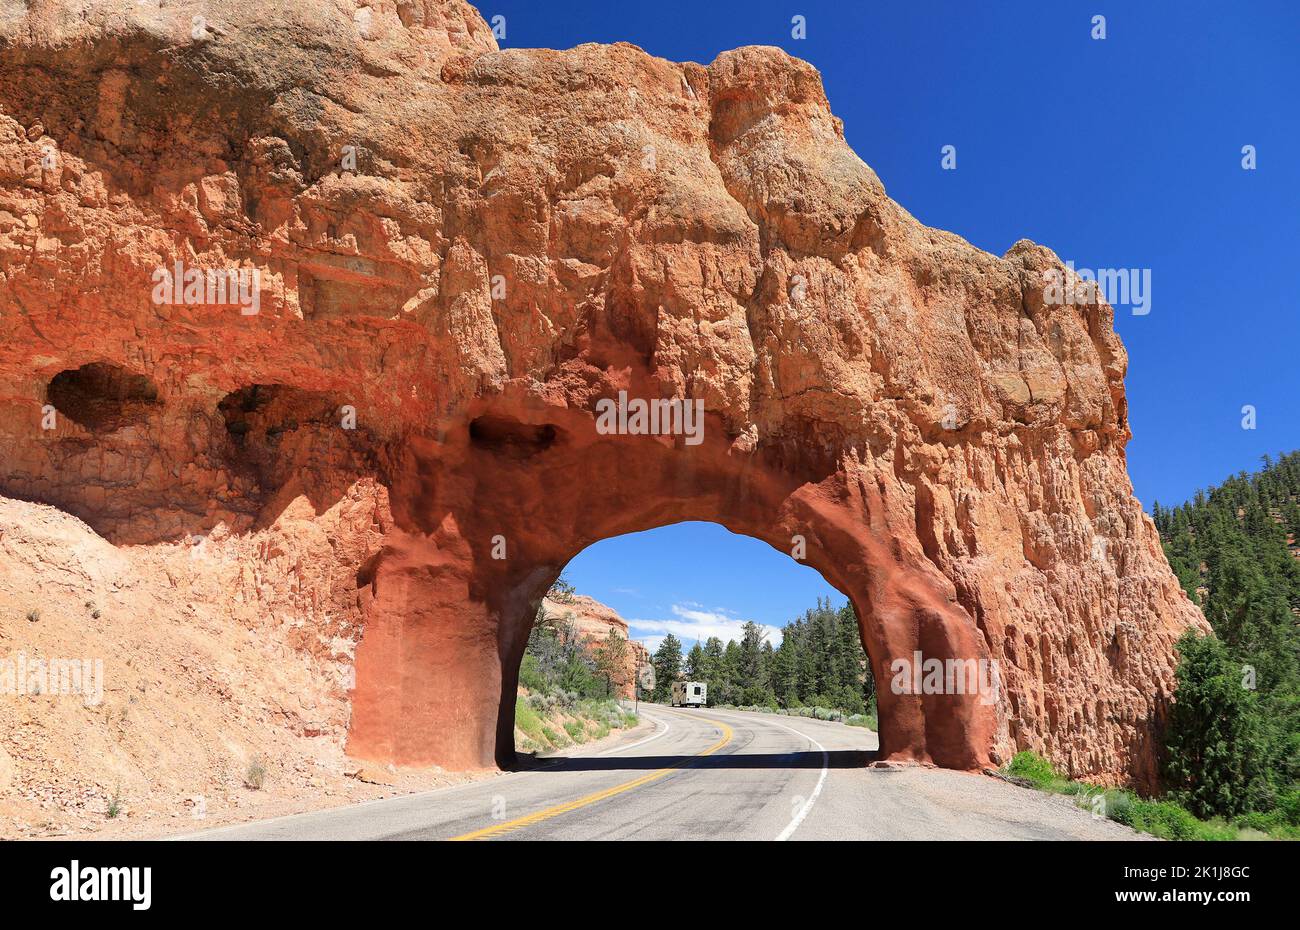 Túnel de carretera con un auto en el fondo en el área de Zion Canyon, Utah, EE.UU Foto de stock